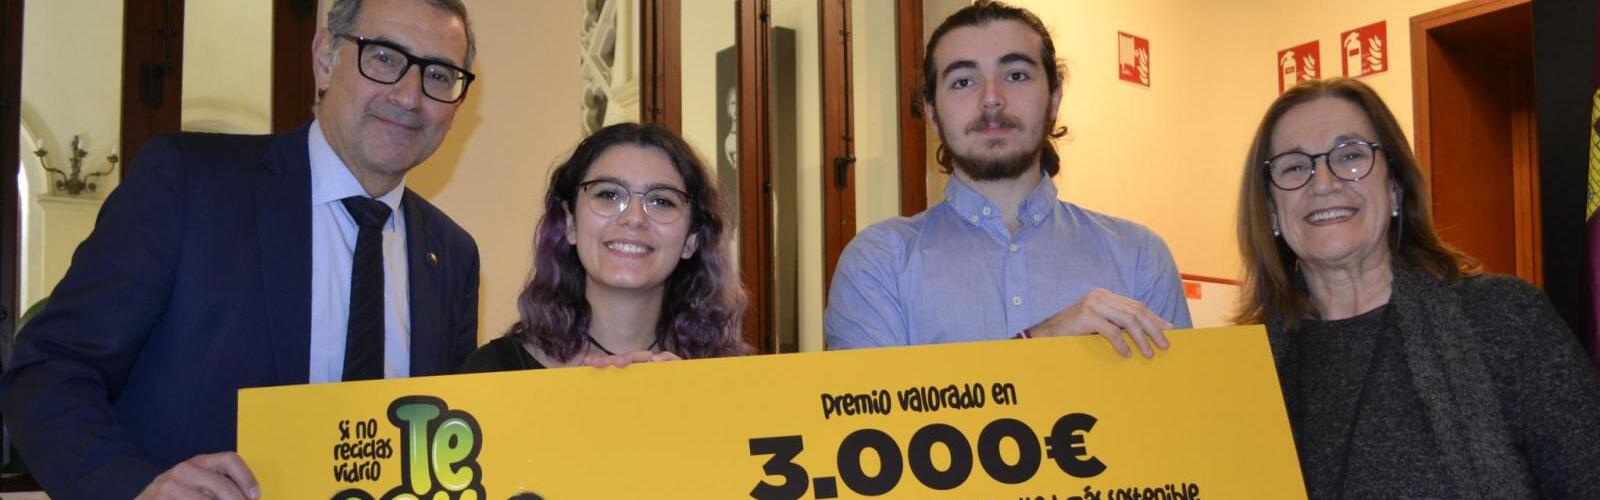 La Facultad de Biología de la Universidad de Murcia gana el reto de reciclaje ‘Te falta calle’ de Ecovidrio